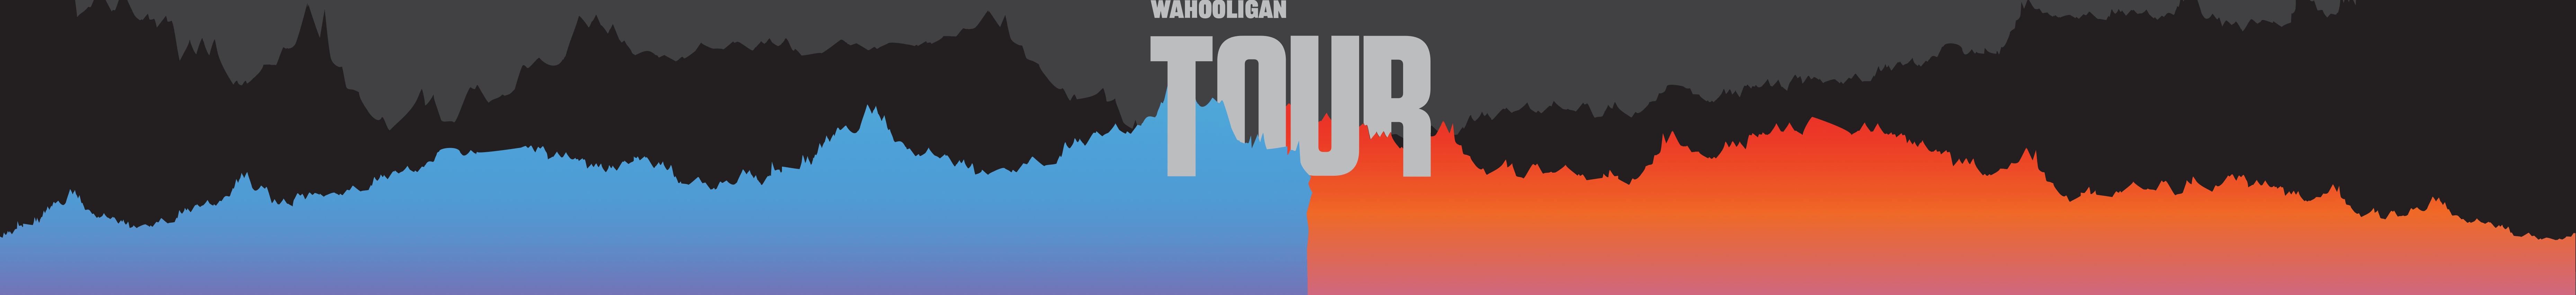 The Wahooligan Tour